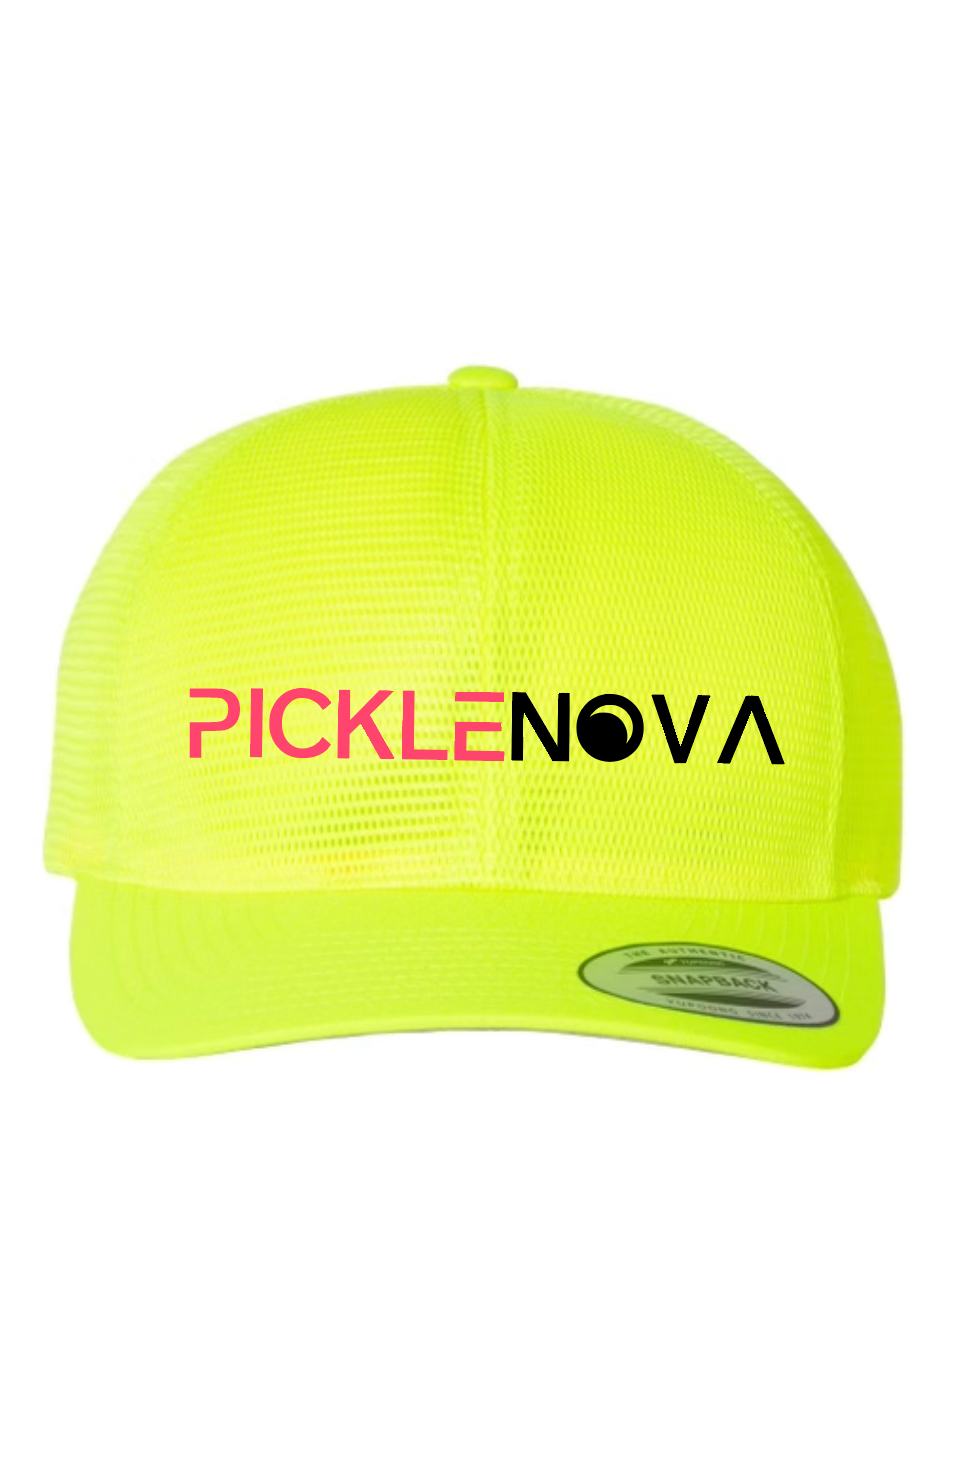 PickleNova Snapback Hat - Neon Green